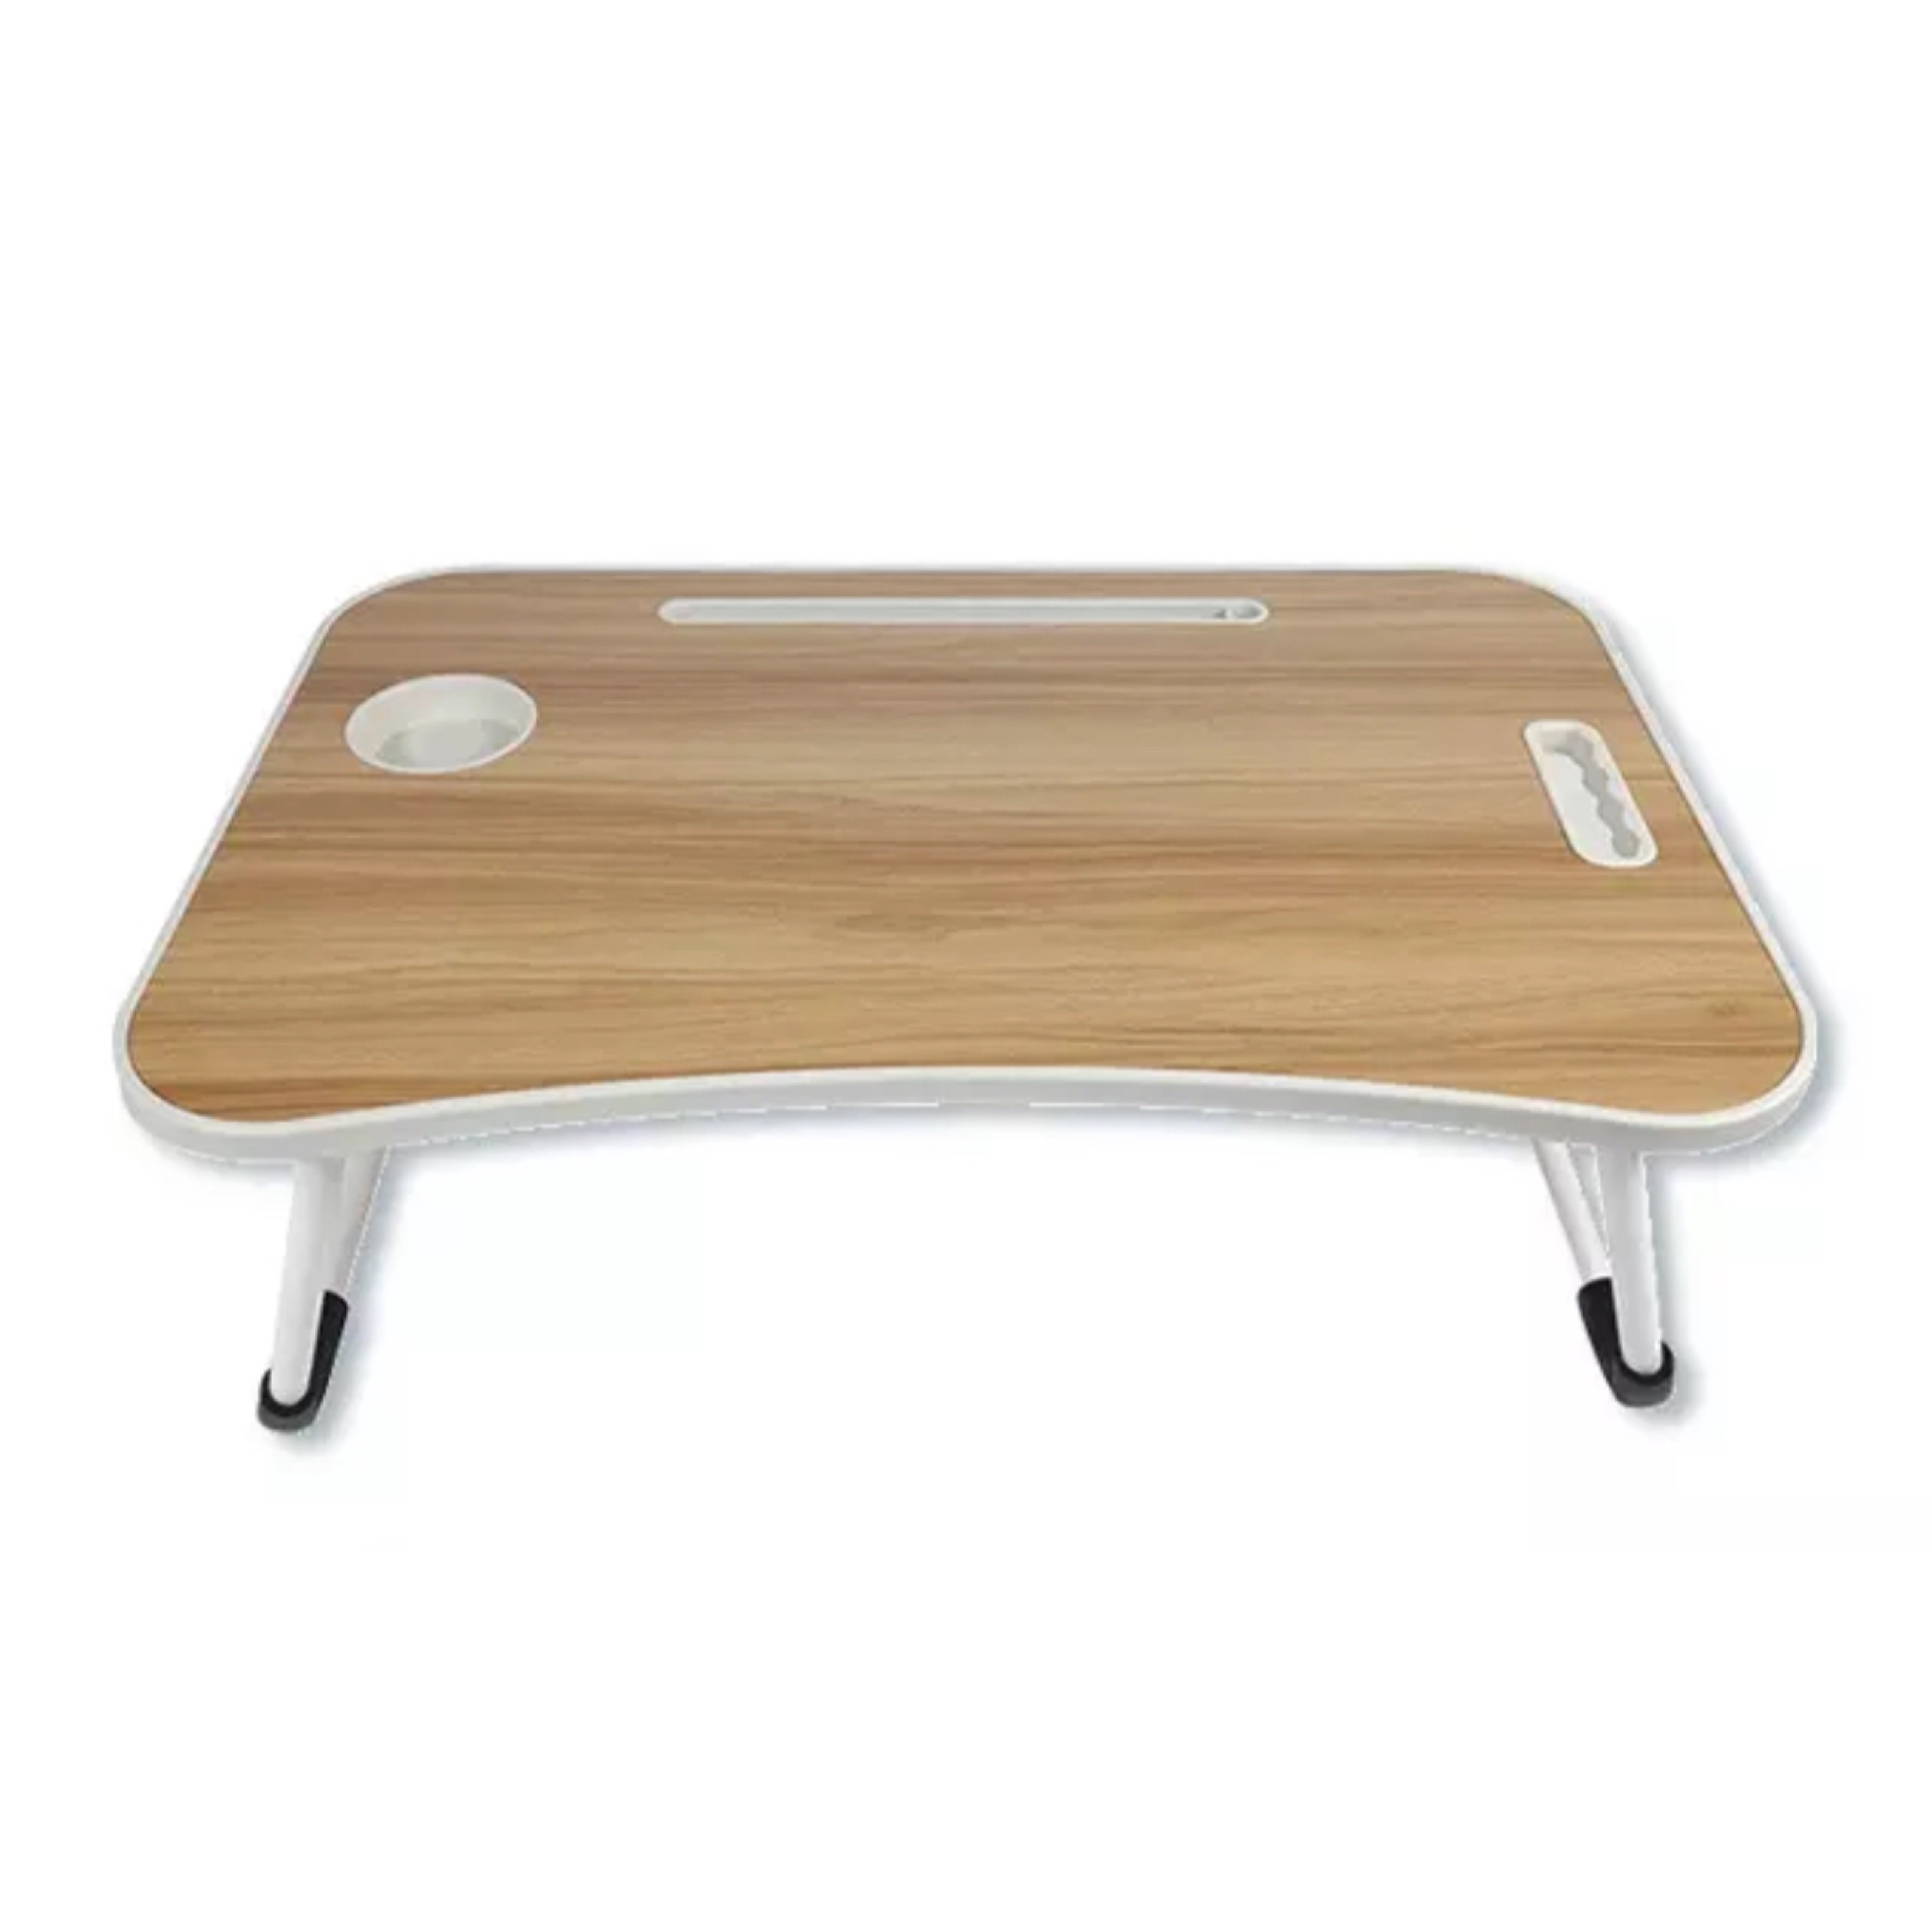 Table pliable en bois pour PC portable ou etudes, table portable pour voiture, pour lit ou salon